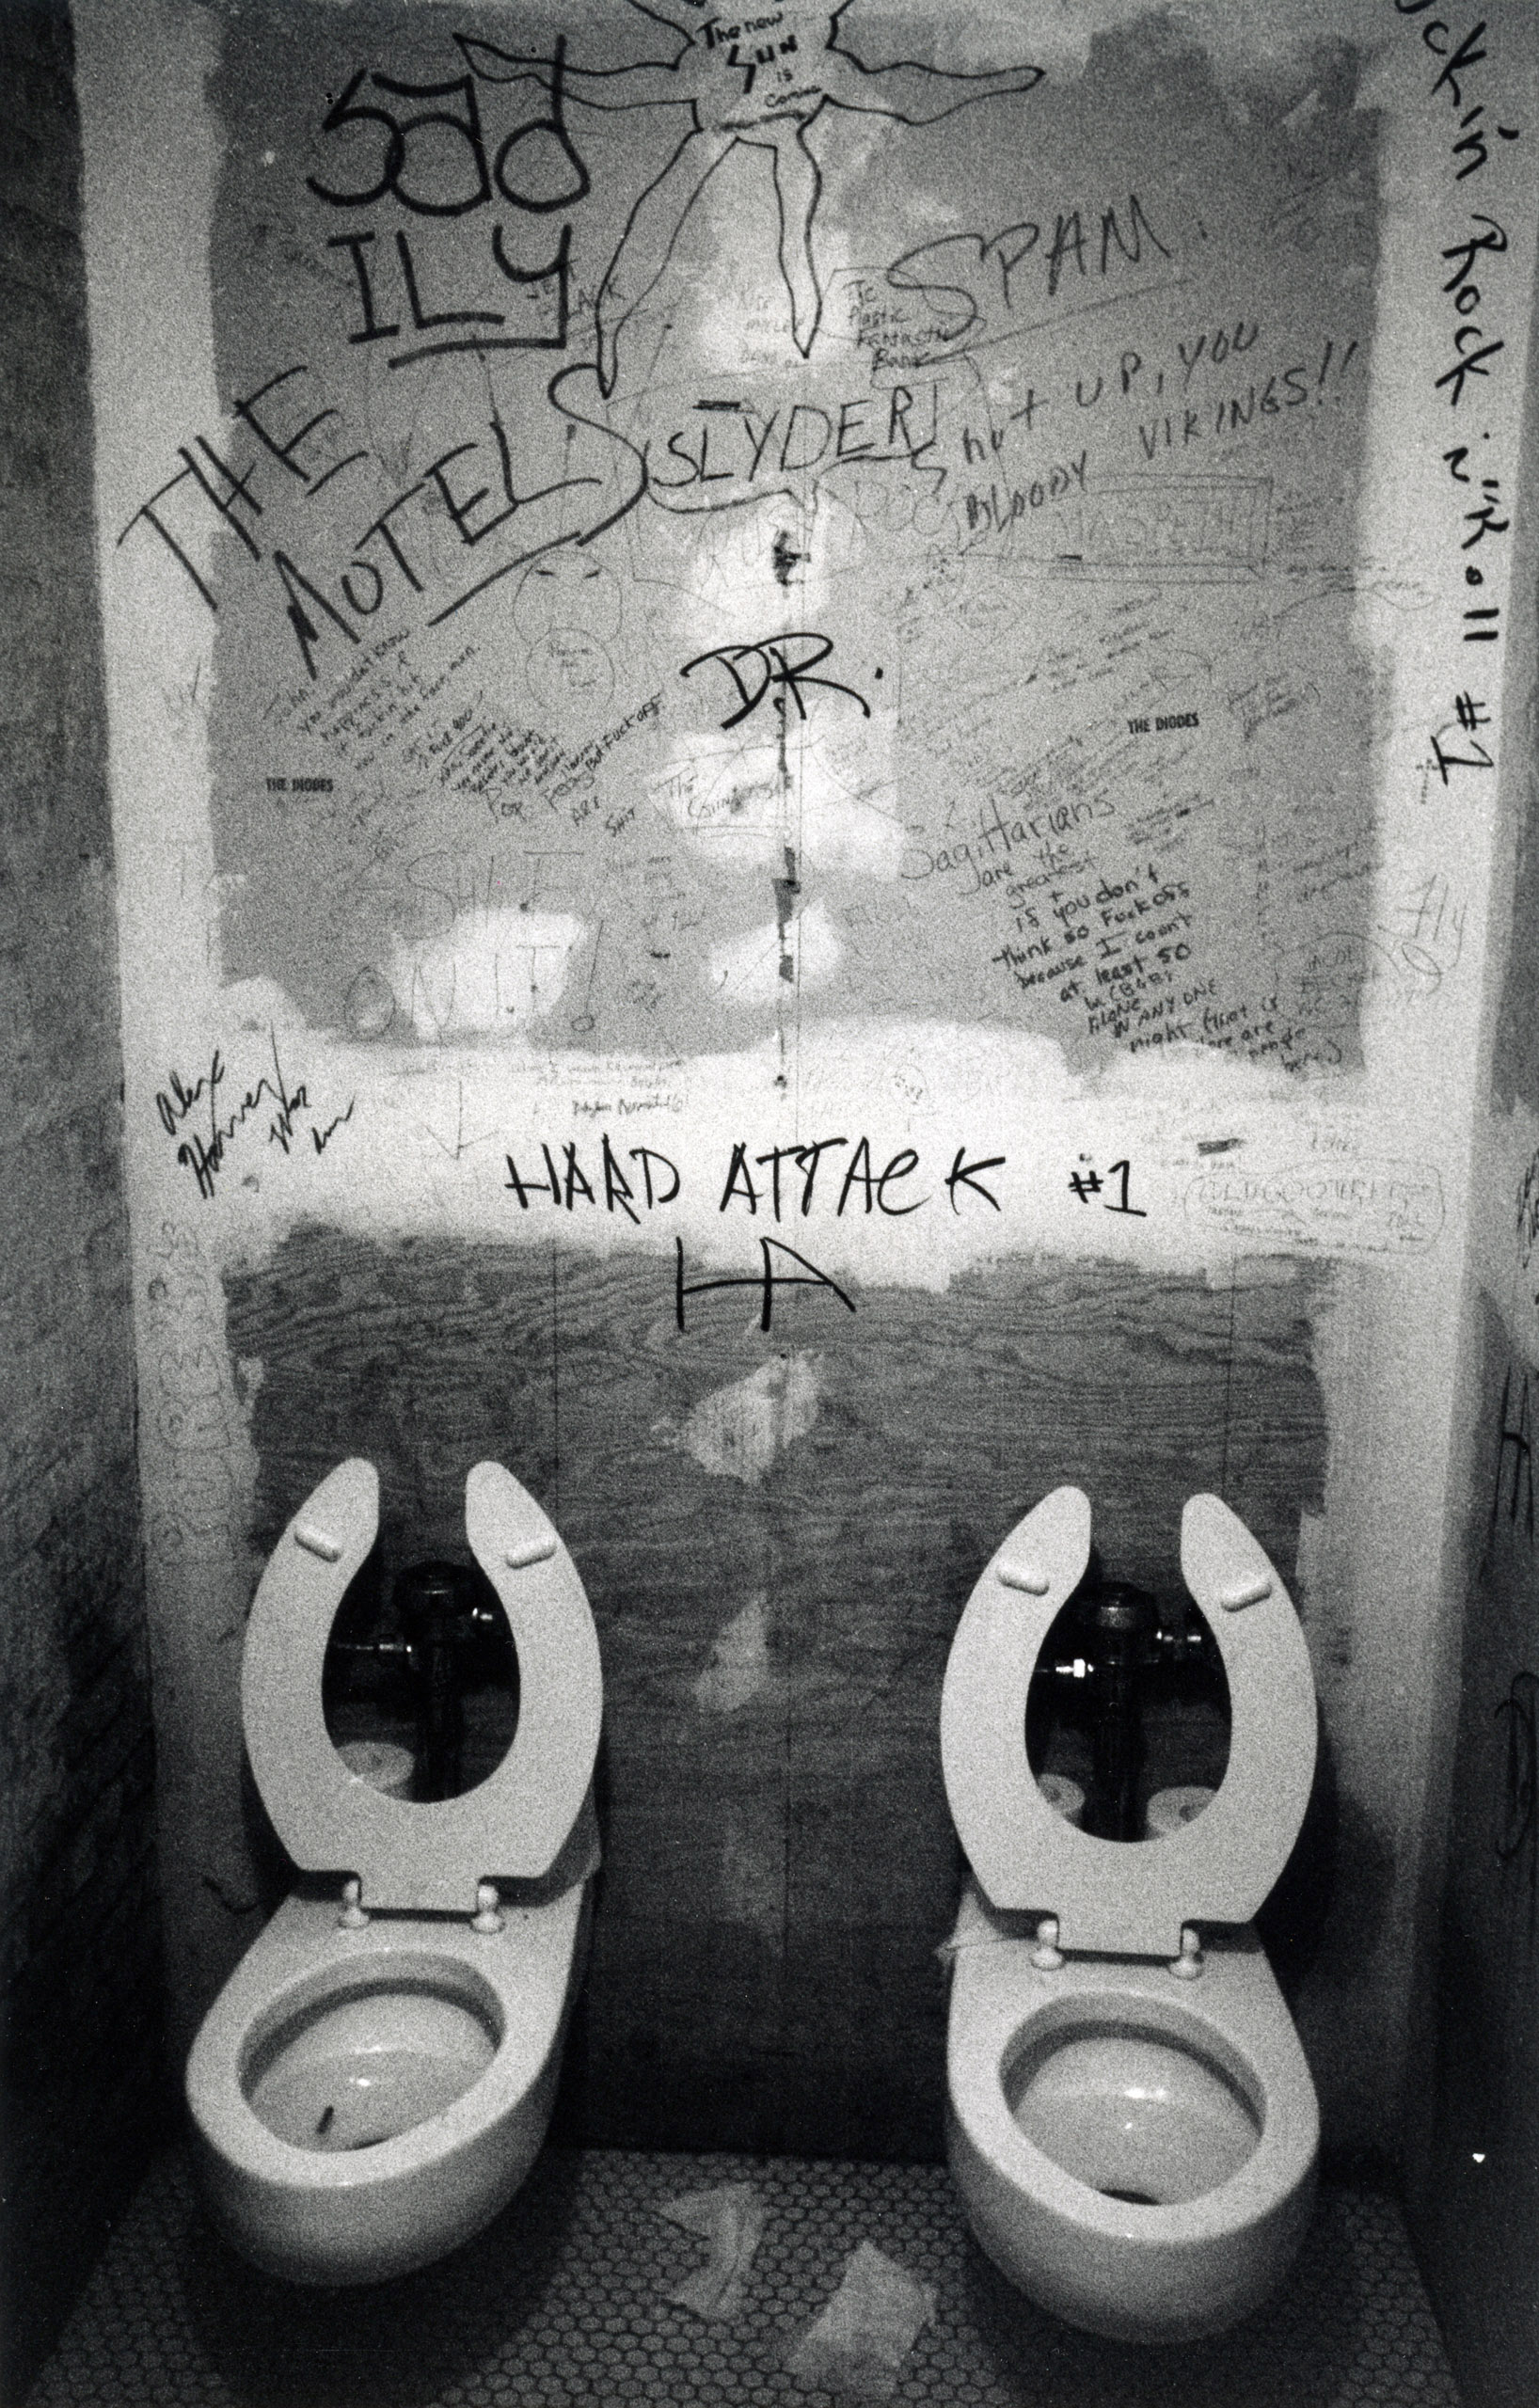 CBGB bathroom, 1977.